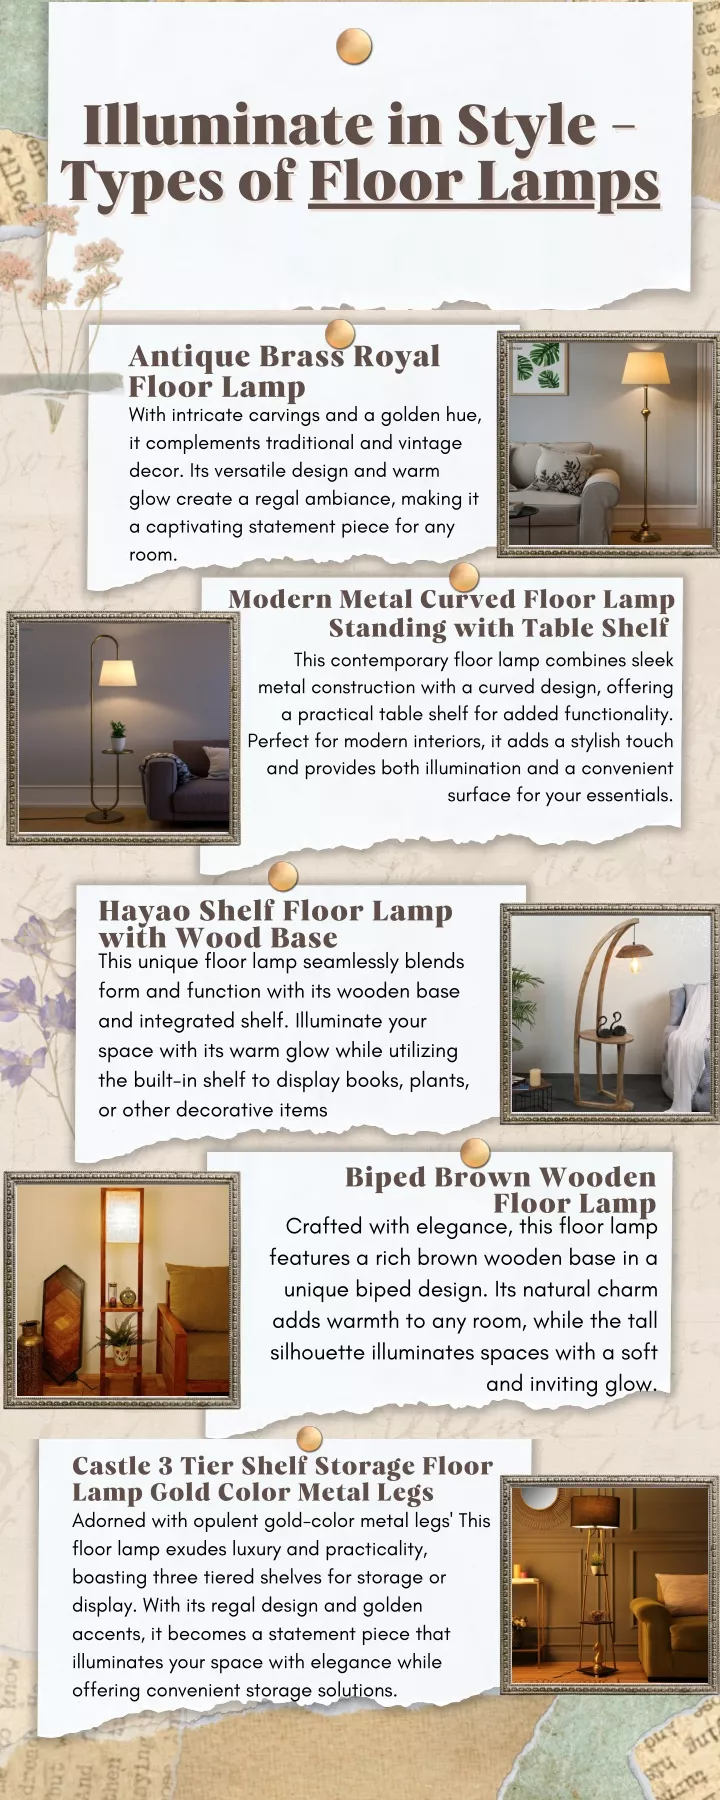 illuminate in style types of floor lamps